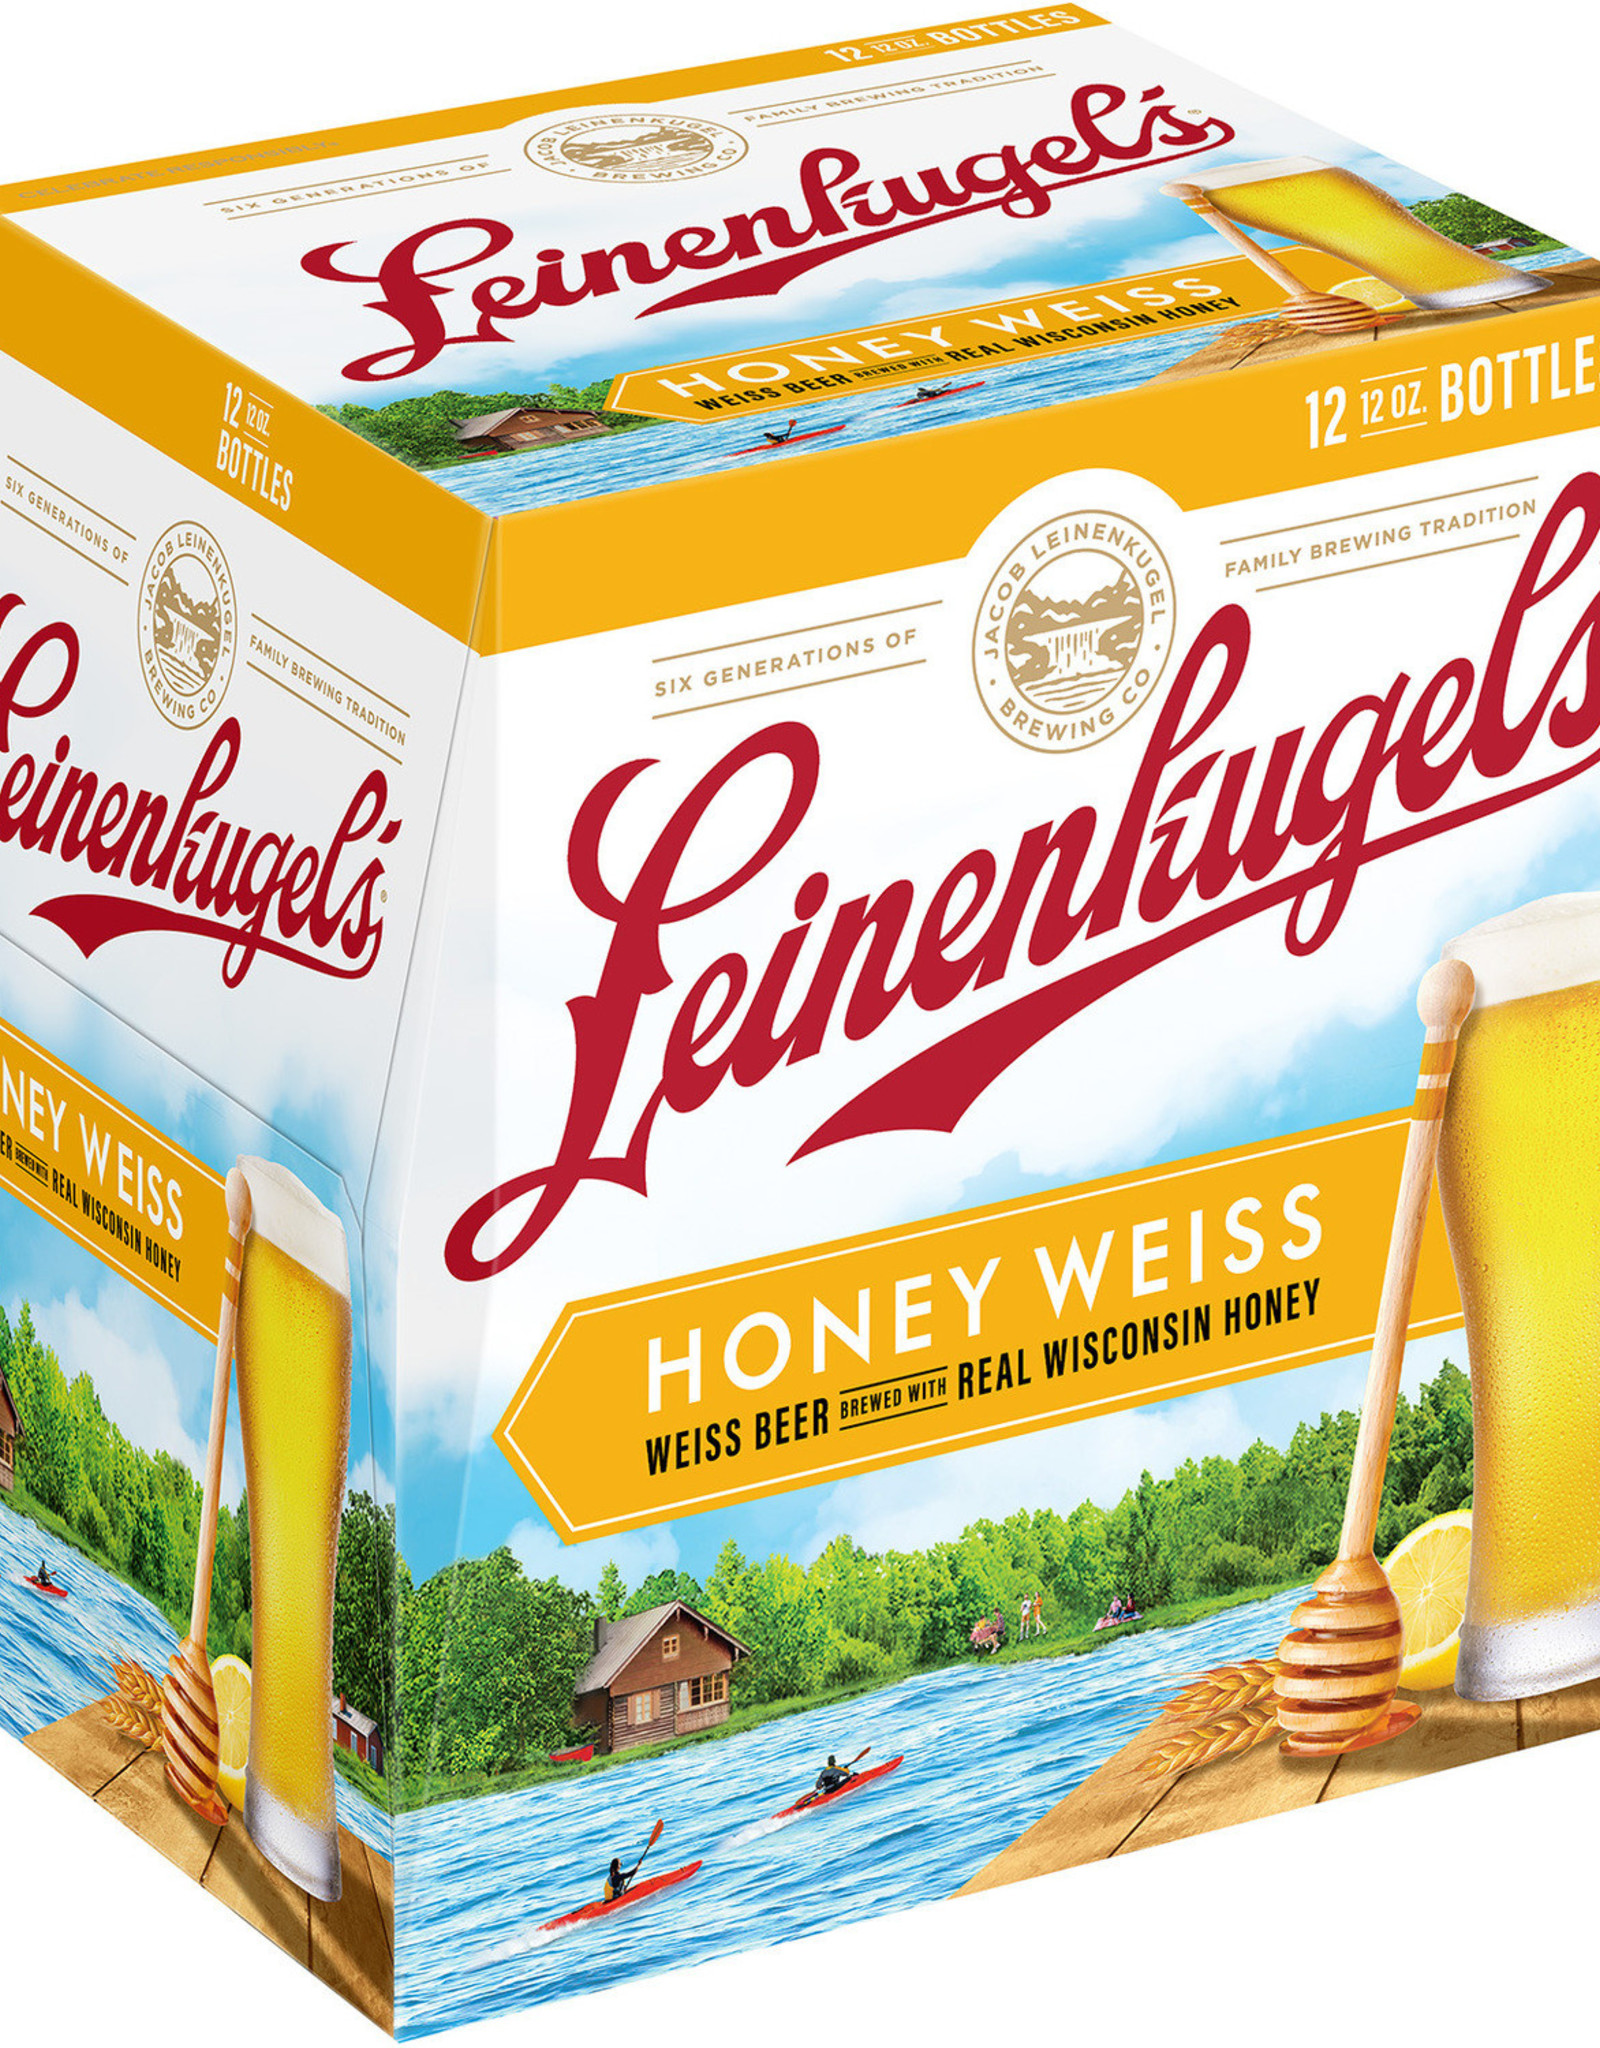 Leinenkugel’s Honey Weiss 12x12 oz bottles